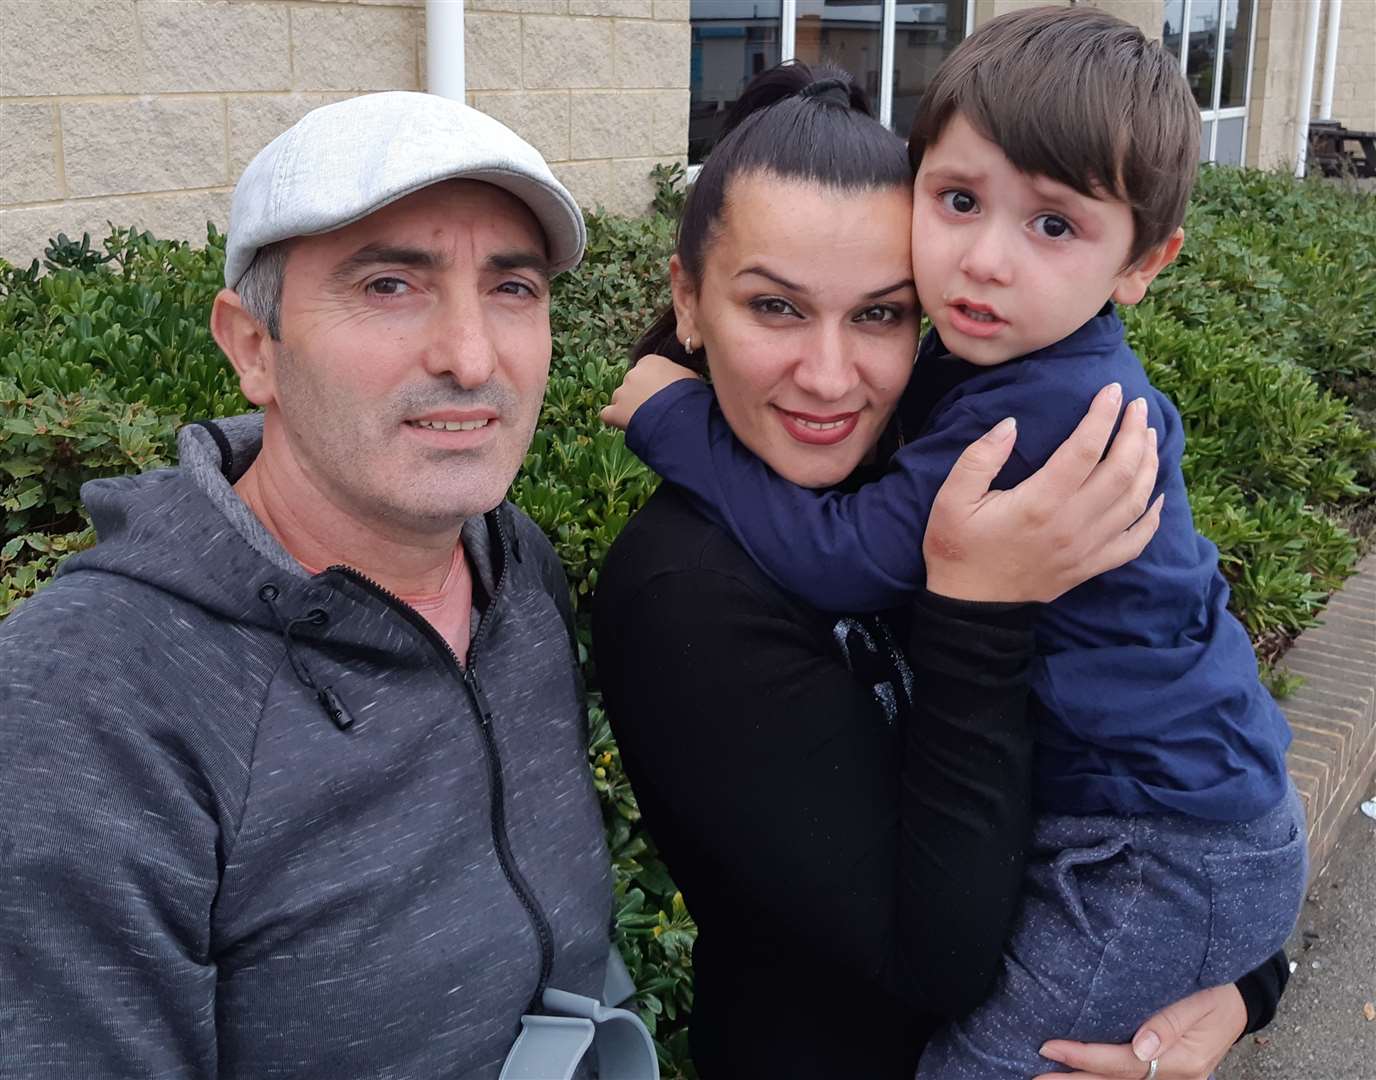 Artan Frroku with his wife Iolande Frashnaj and son Daniel